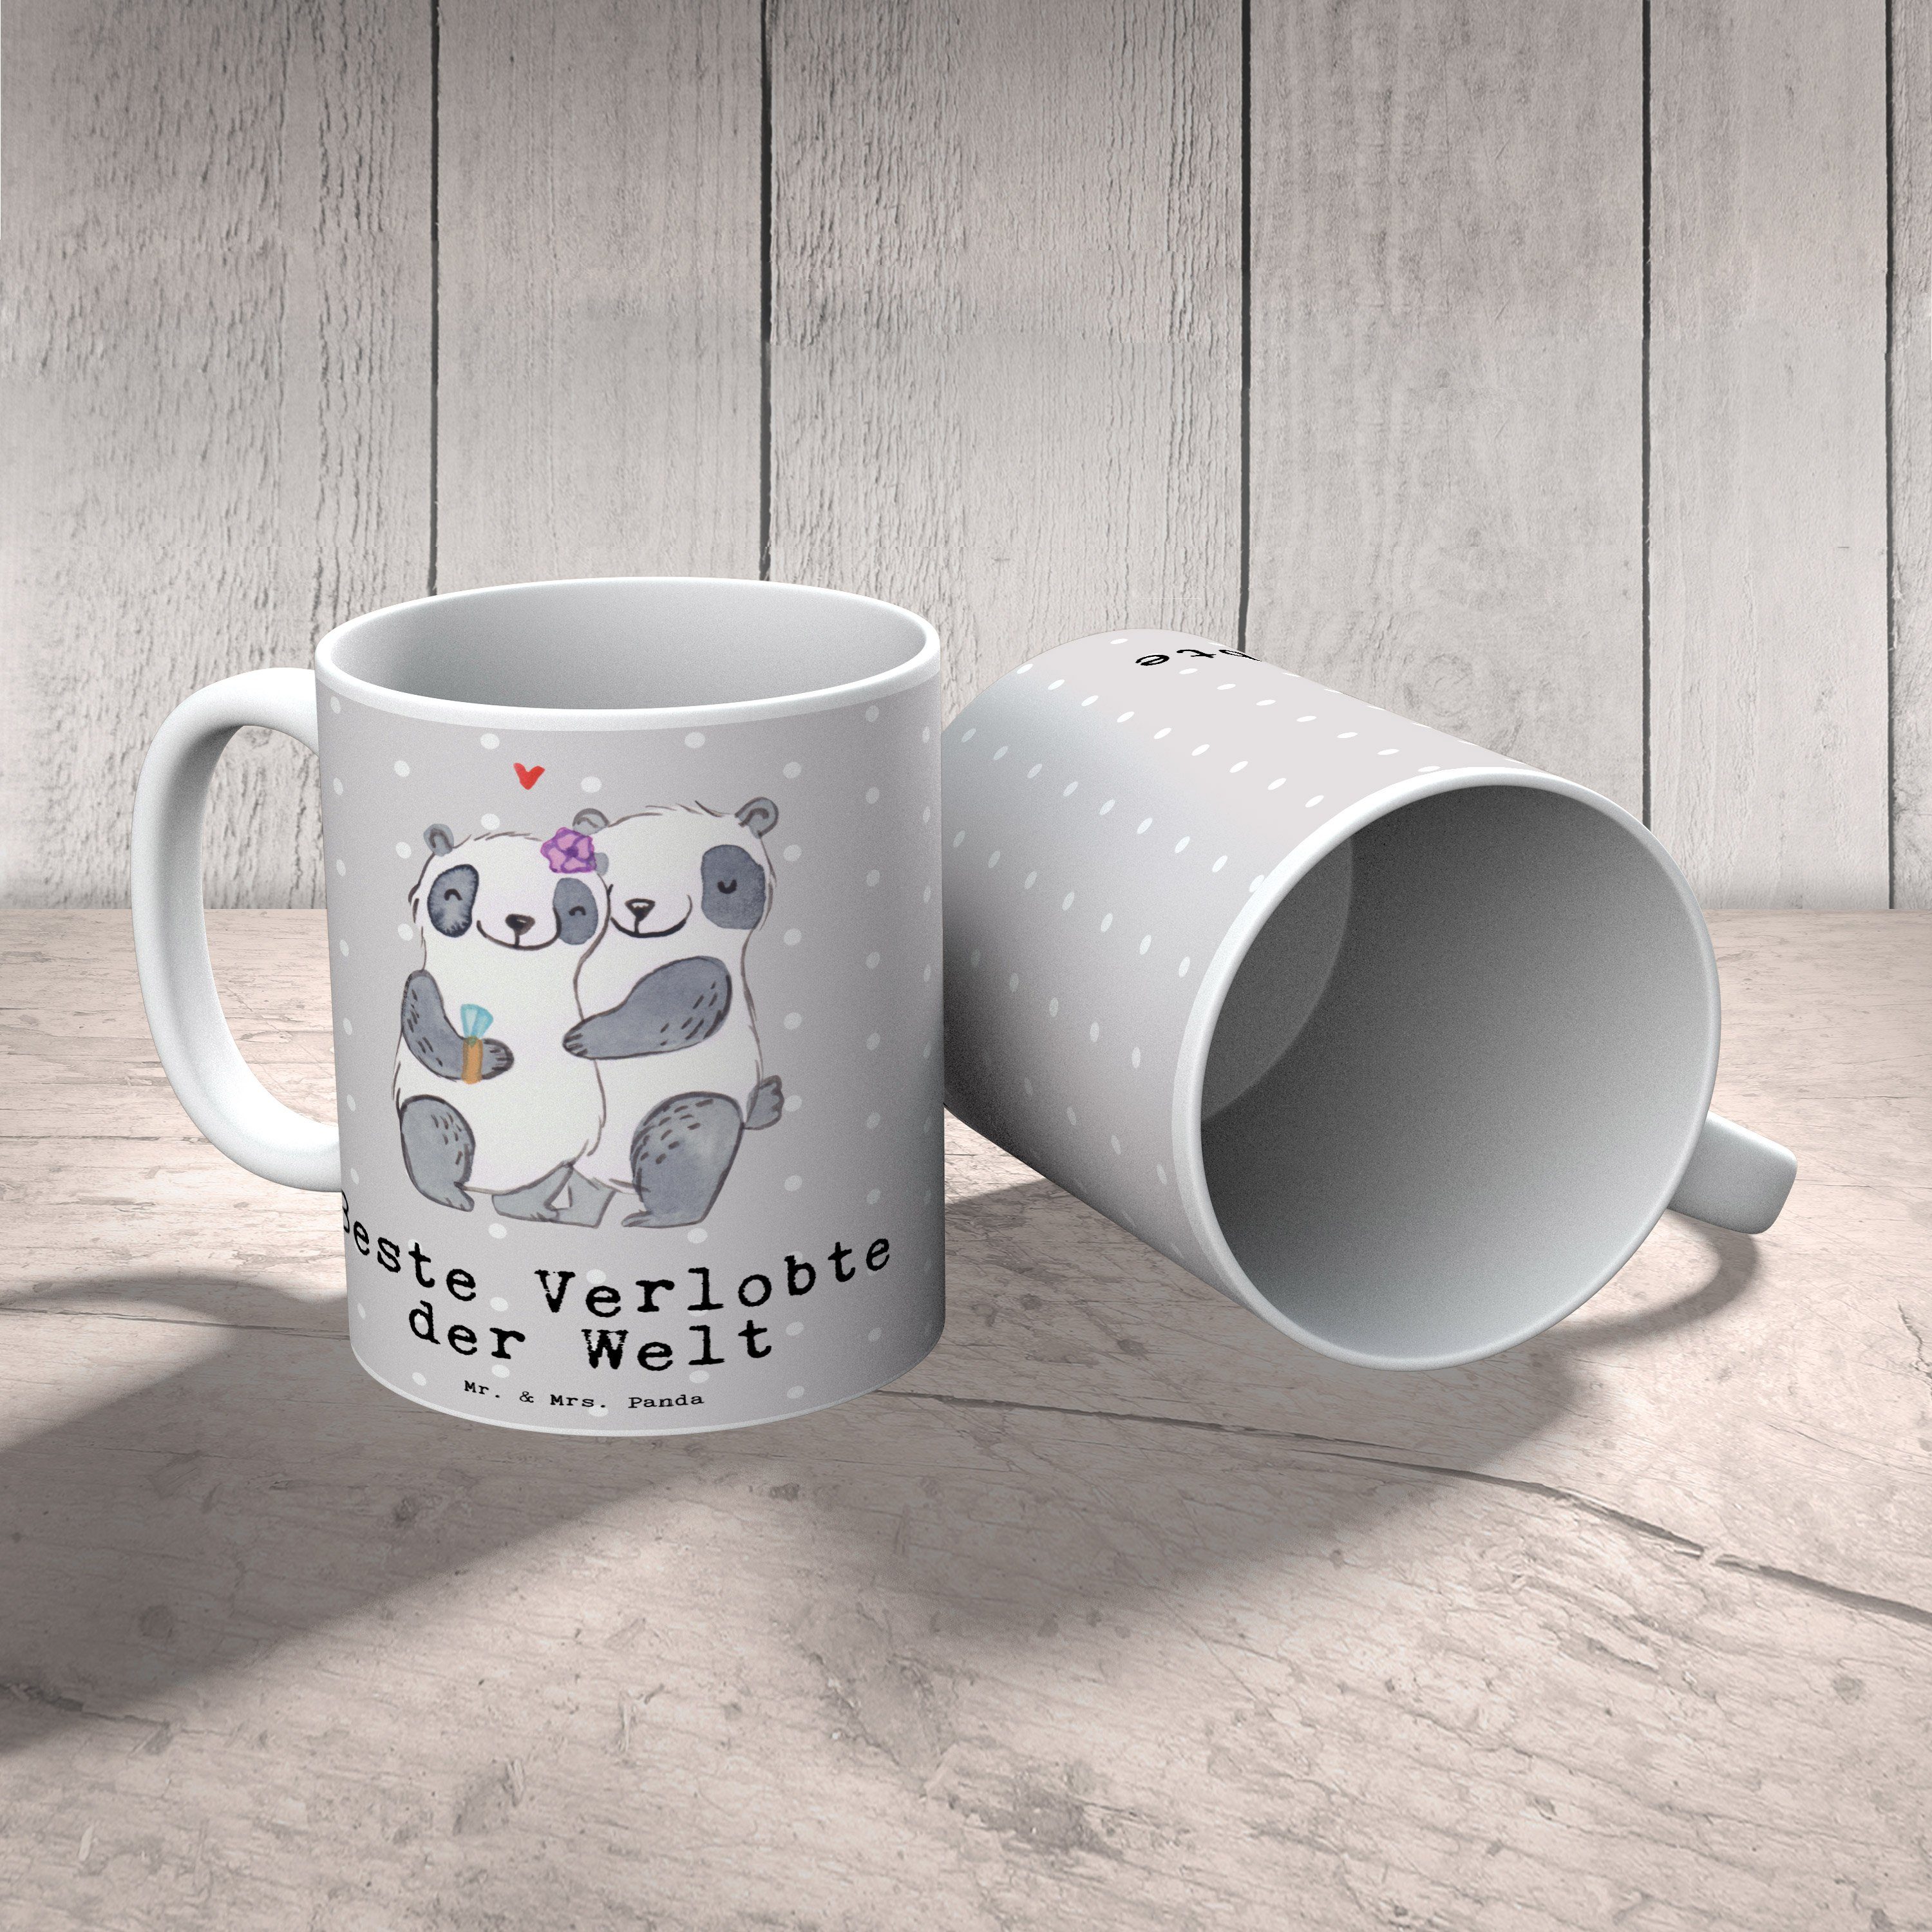 Beste Keramik - & Mrs. Panda Panda Tasse Tasse Welt der Mr. Sprüch, Grau - Geschenk, Pastell Verlobte